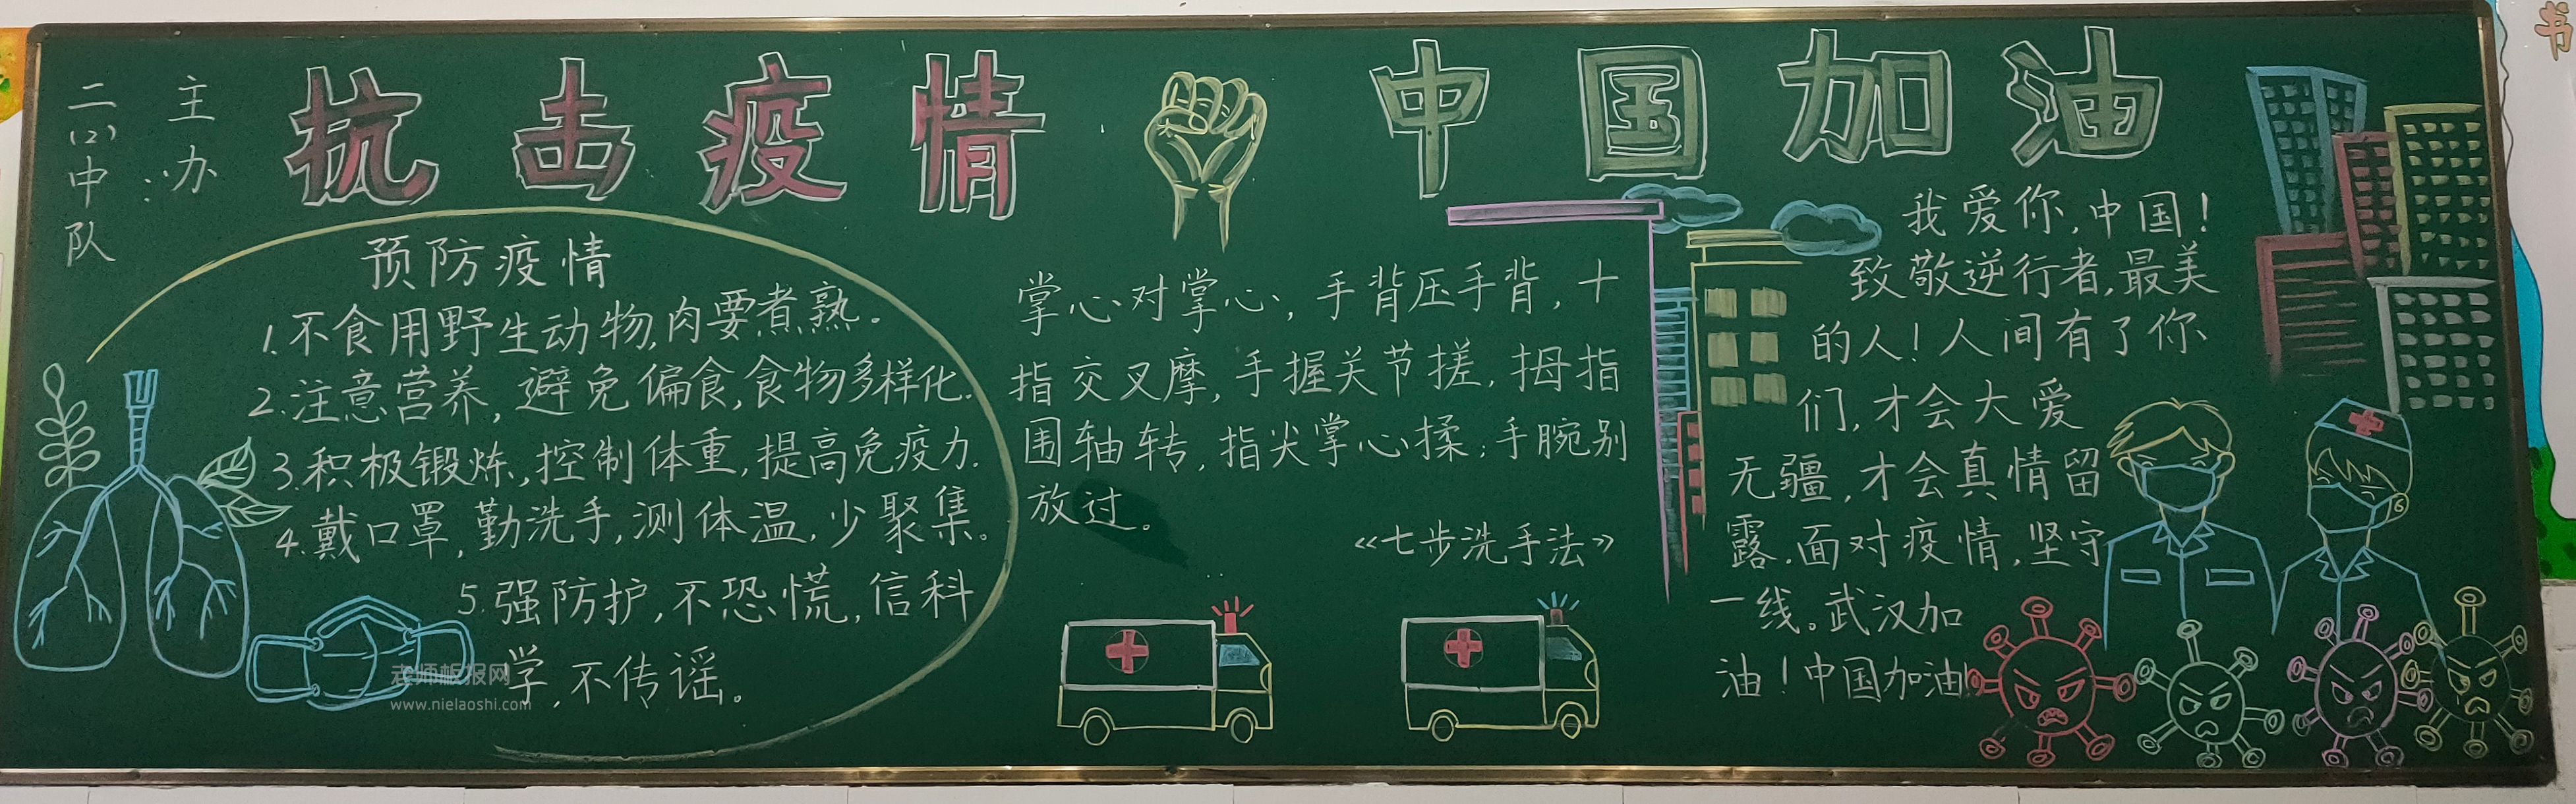 抗击疫情 中国加油黑板报高清图片